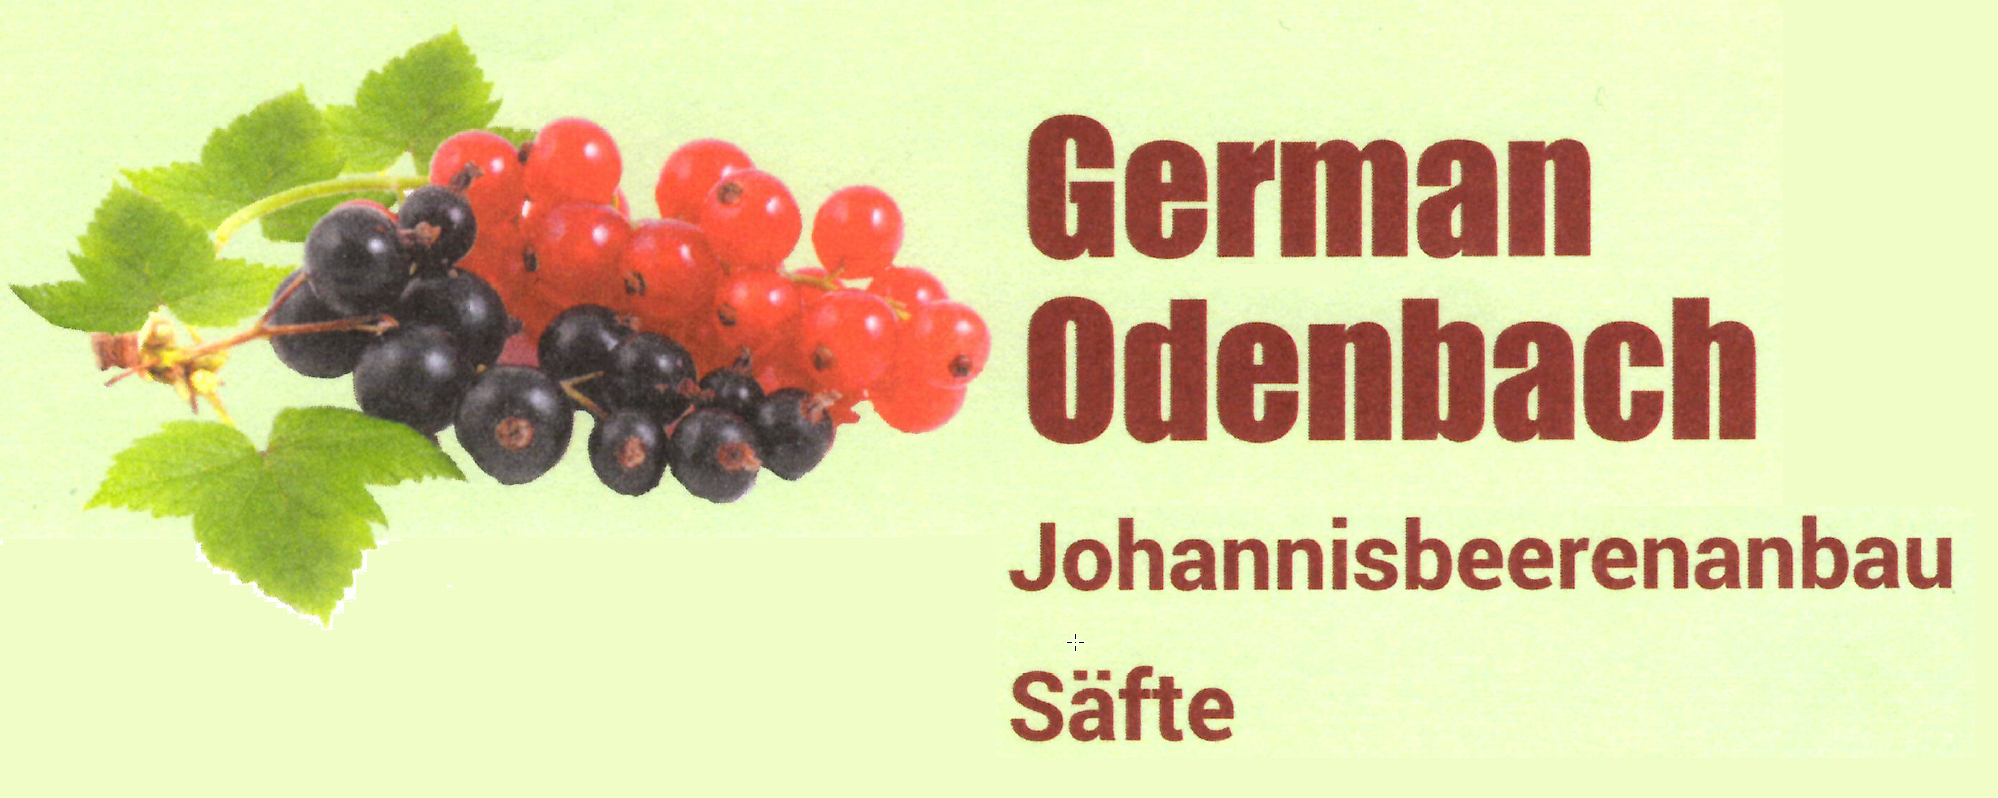 German Odenbach Johannisbeerenanbau und Säfte